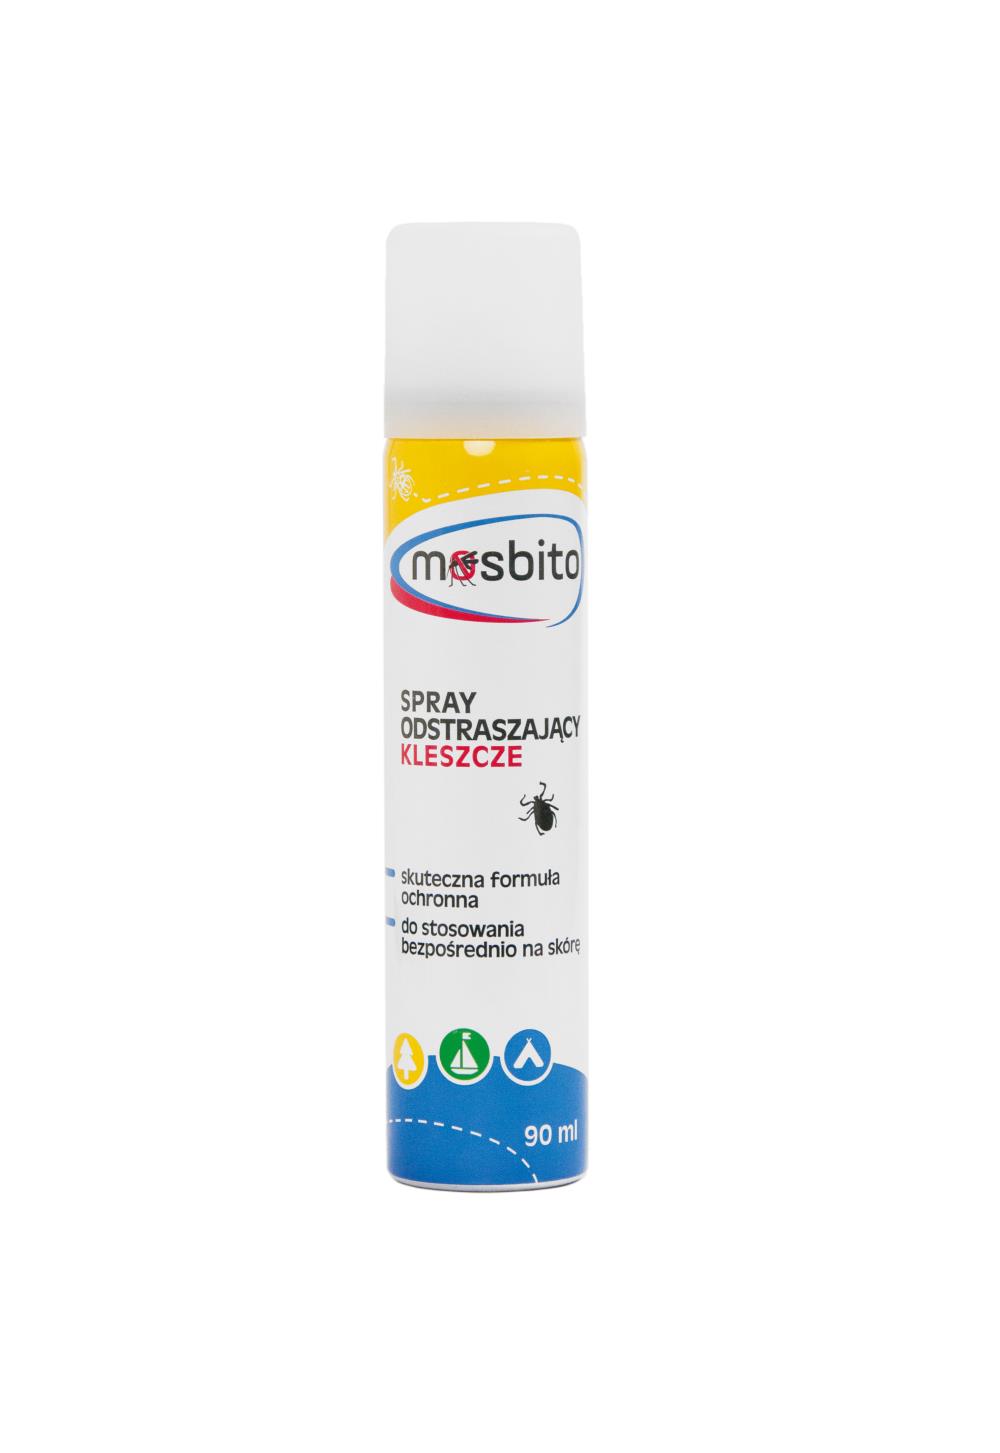 Mosbito Spray odstraszający kleszcze, 90 ml